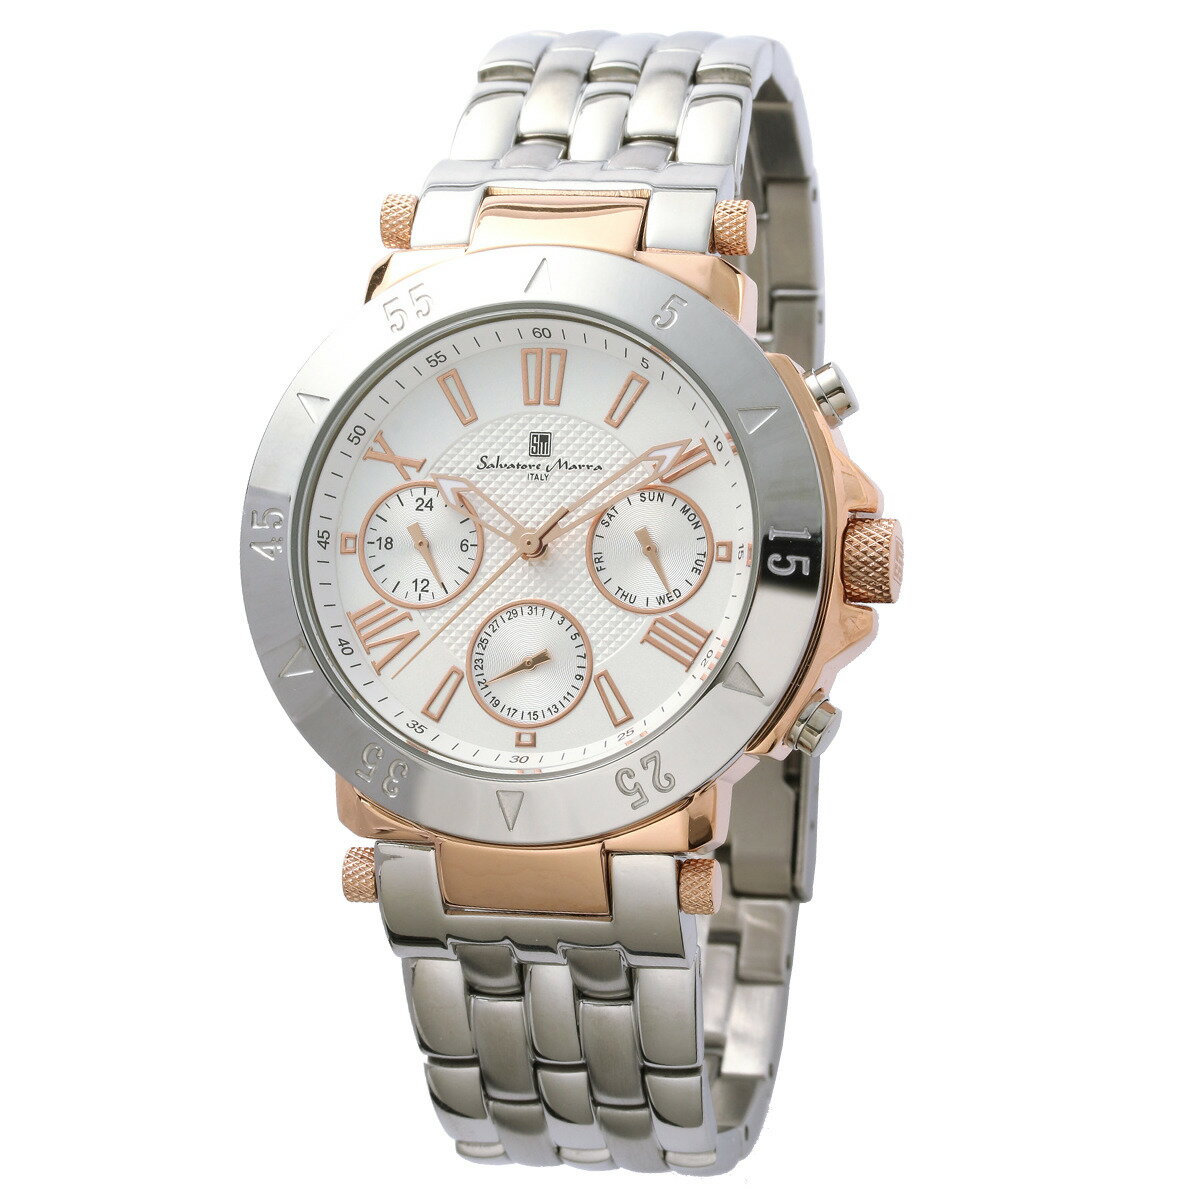 サルバトーレマーラ Salavatore Marra 腕時計 SM22108 PGWH クオーツ メンズ腕時計 ステンレスベルト アナログ表示 10気圧防水 紳士用 時計